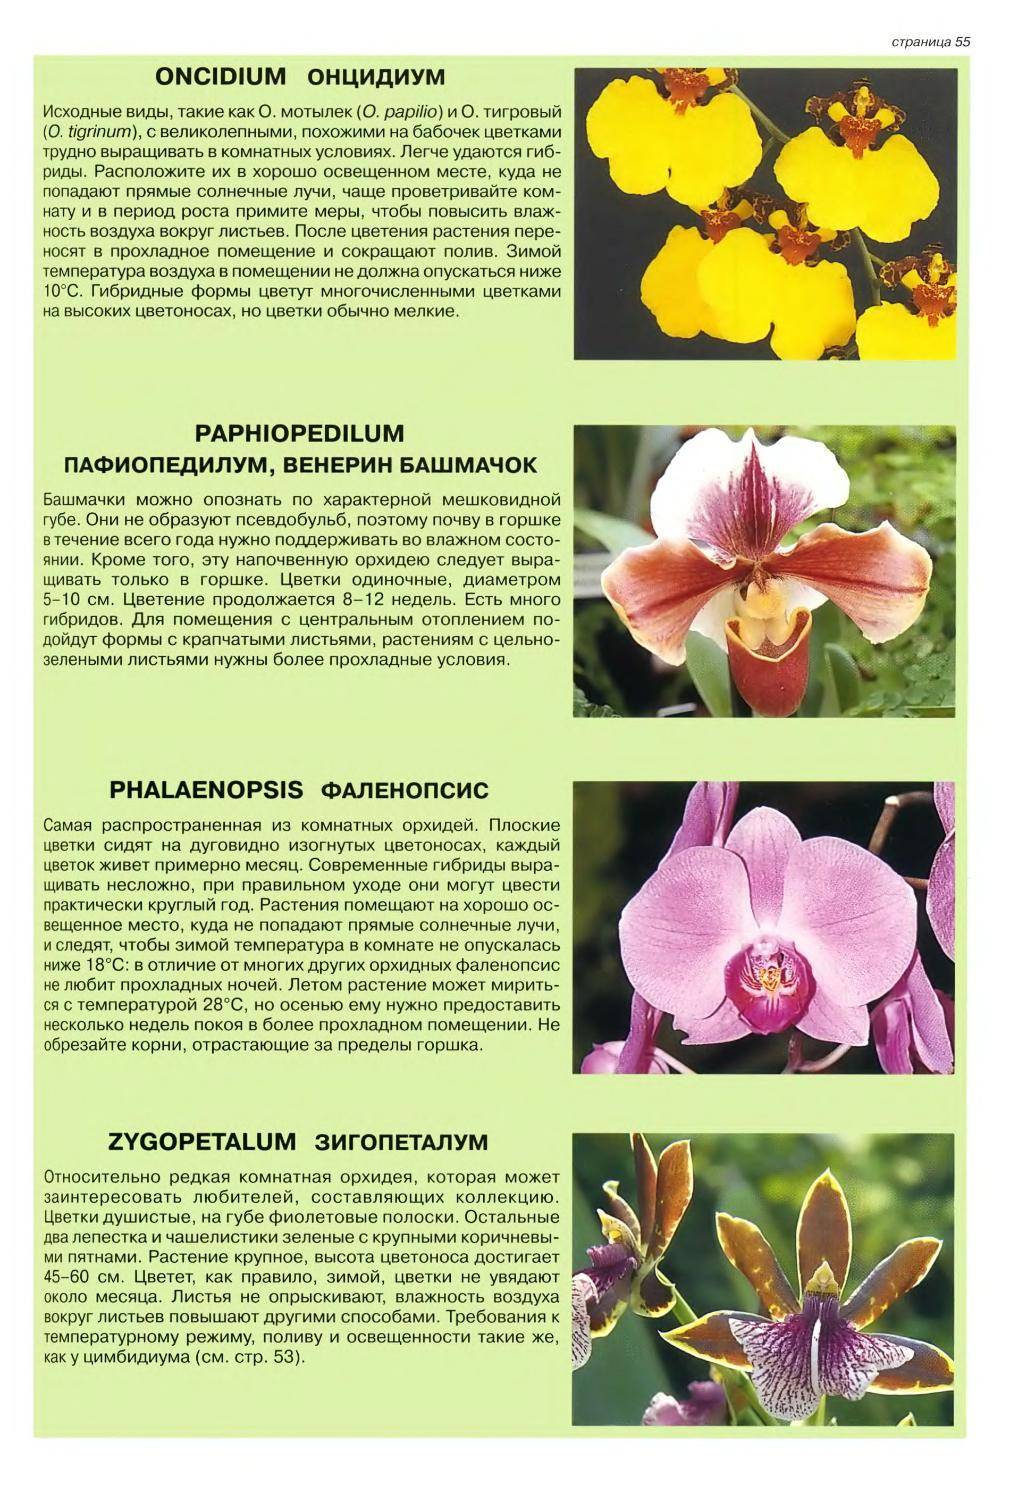 Какие оттенки цвета бывают у орхидеи? обзор декоративных цветов фаленопсис